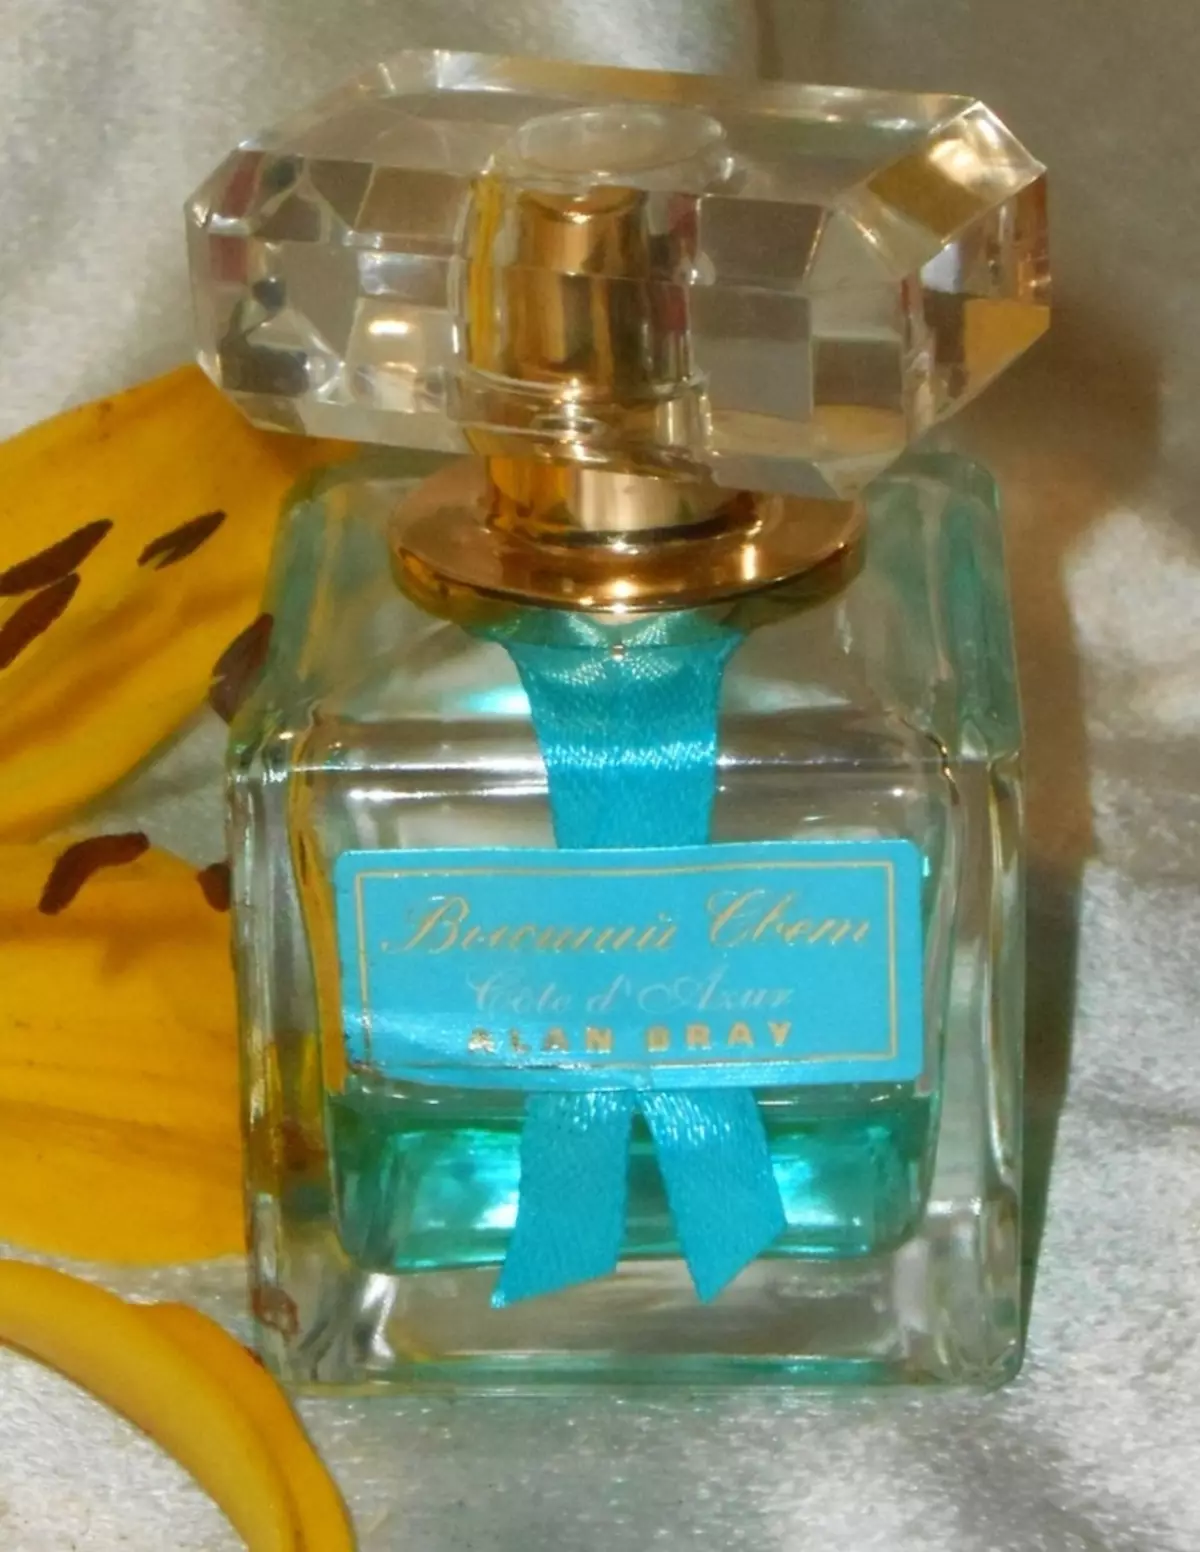 Perfumery Alan Bray: L'Homme Legend Maji ya Toilend kwa wanaume, 